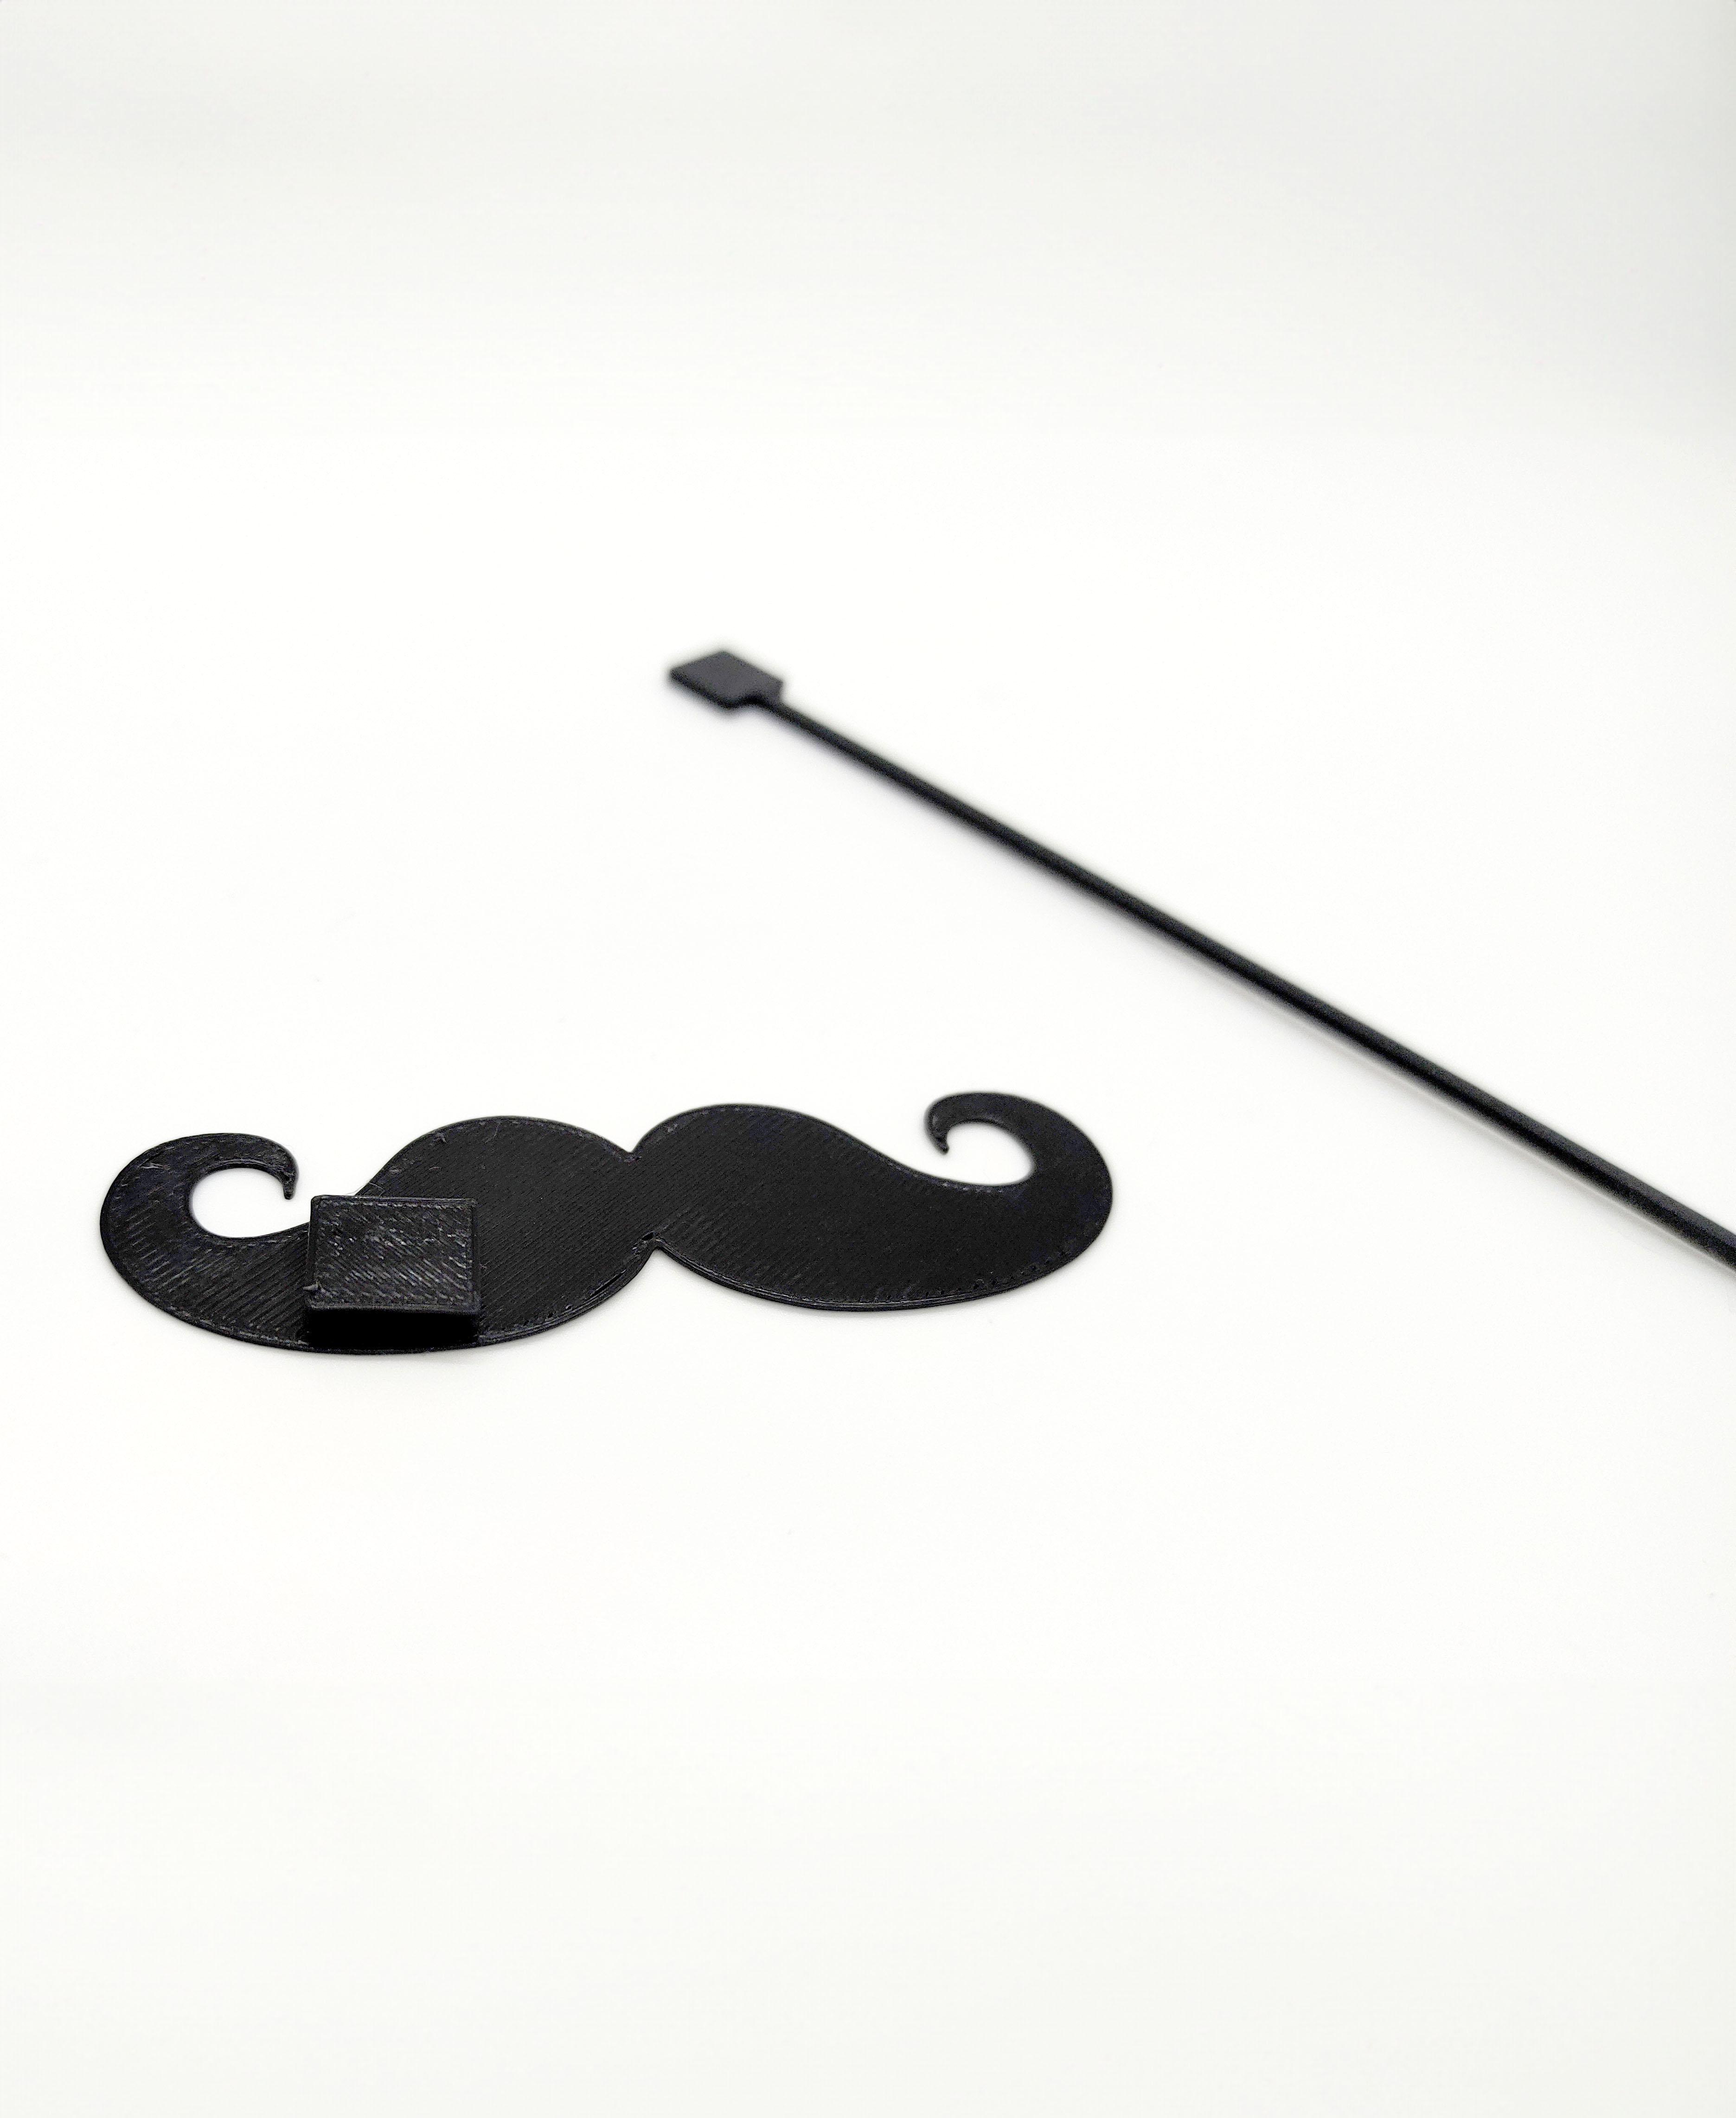 REMIX ME! Mustache for photo prop stick 3d model